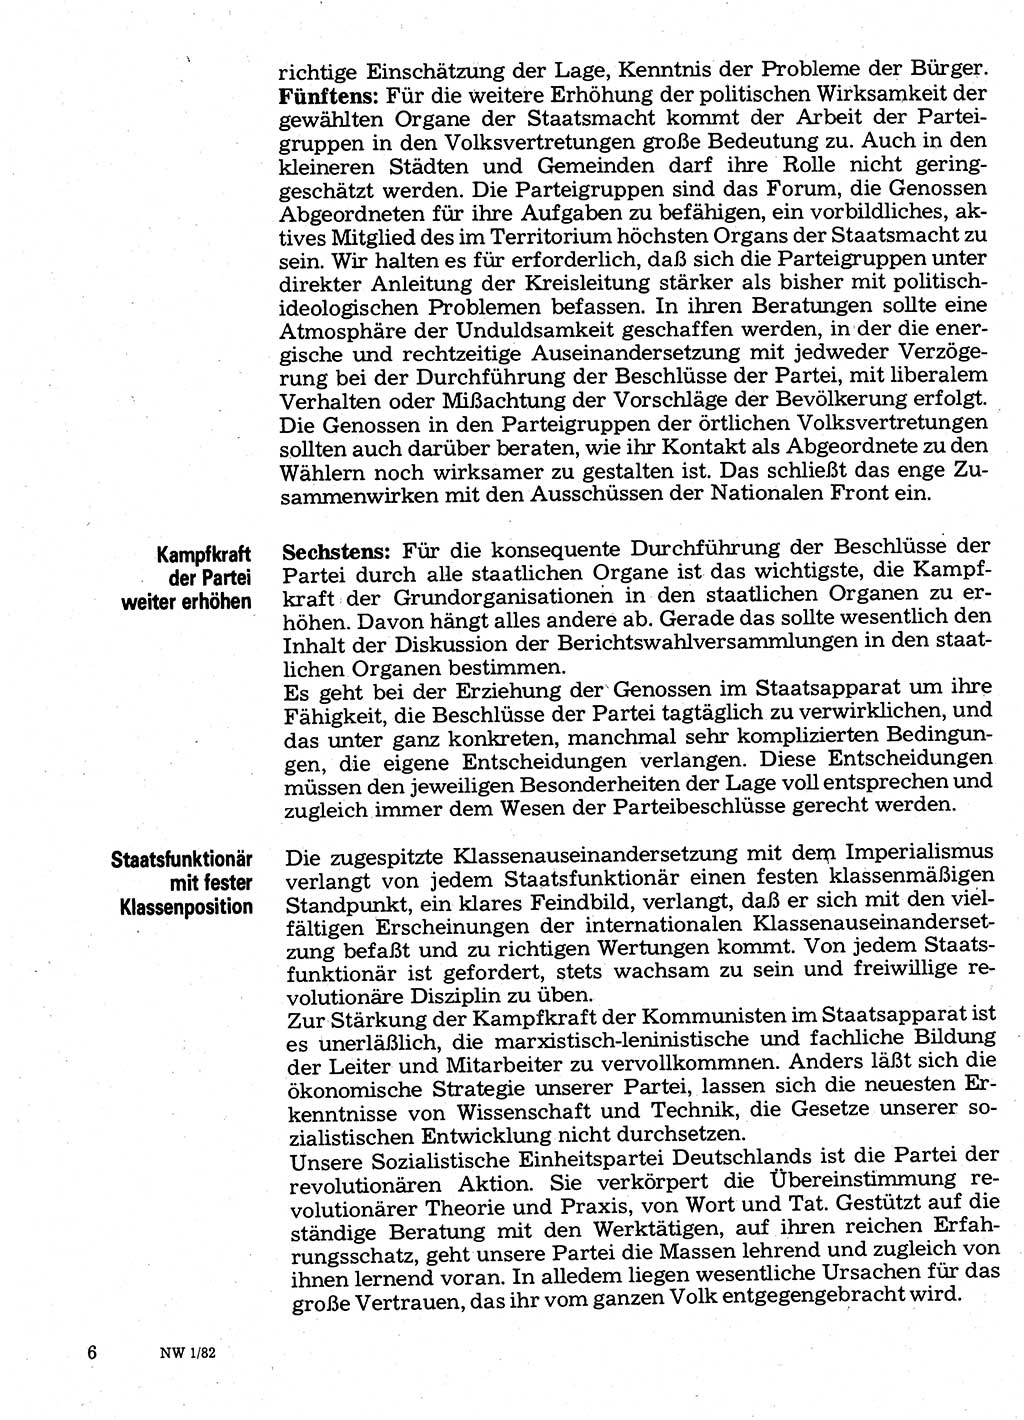 Neuer Weg (NW), Organ des Zentralkomitees (ZK) der SED (Sozialistische Einheitspartei Deutschlands) für Fragen des Parteilebens, 37. Jahrgang [Deutsche Demokratische Republik (DDR)] 1982, Seite 6 (NW ZK SED DDR 1982, S. 6)